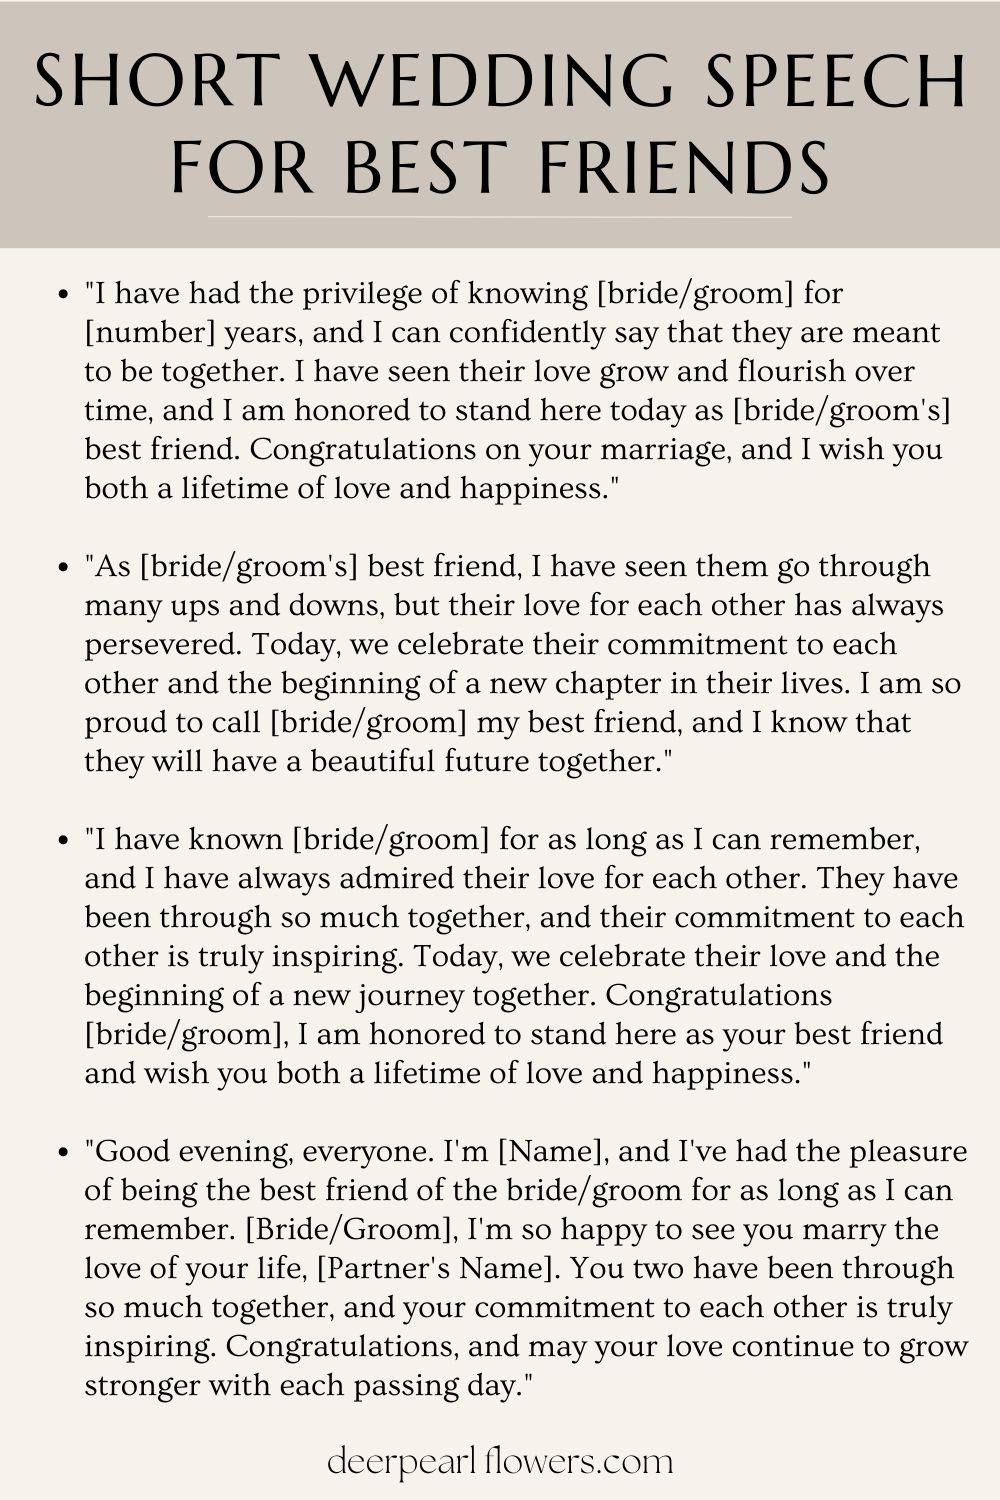 writing speech for best friend wedding